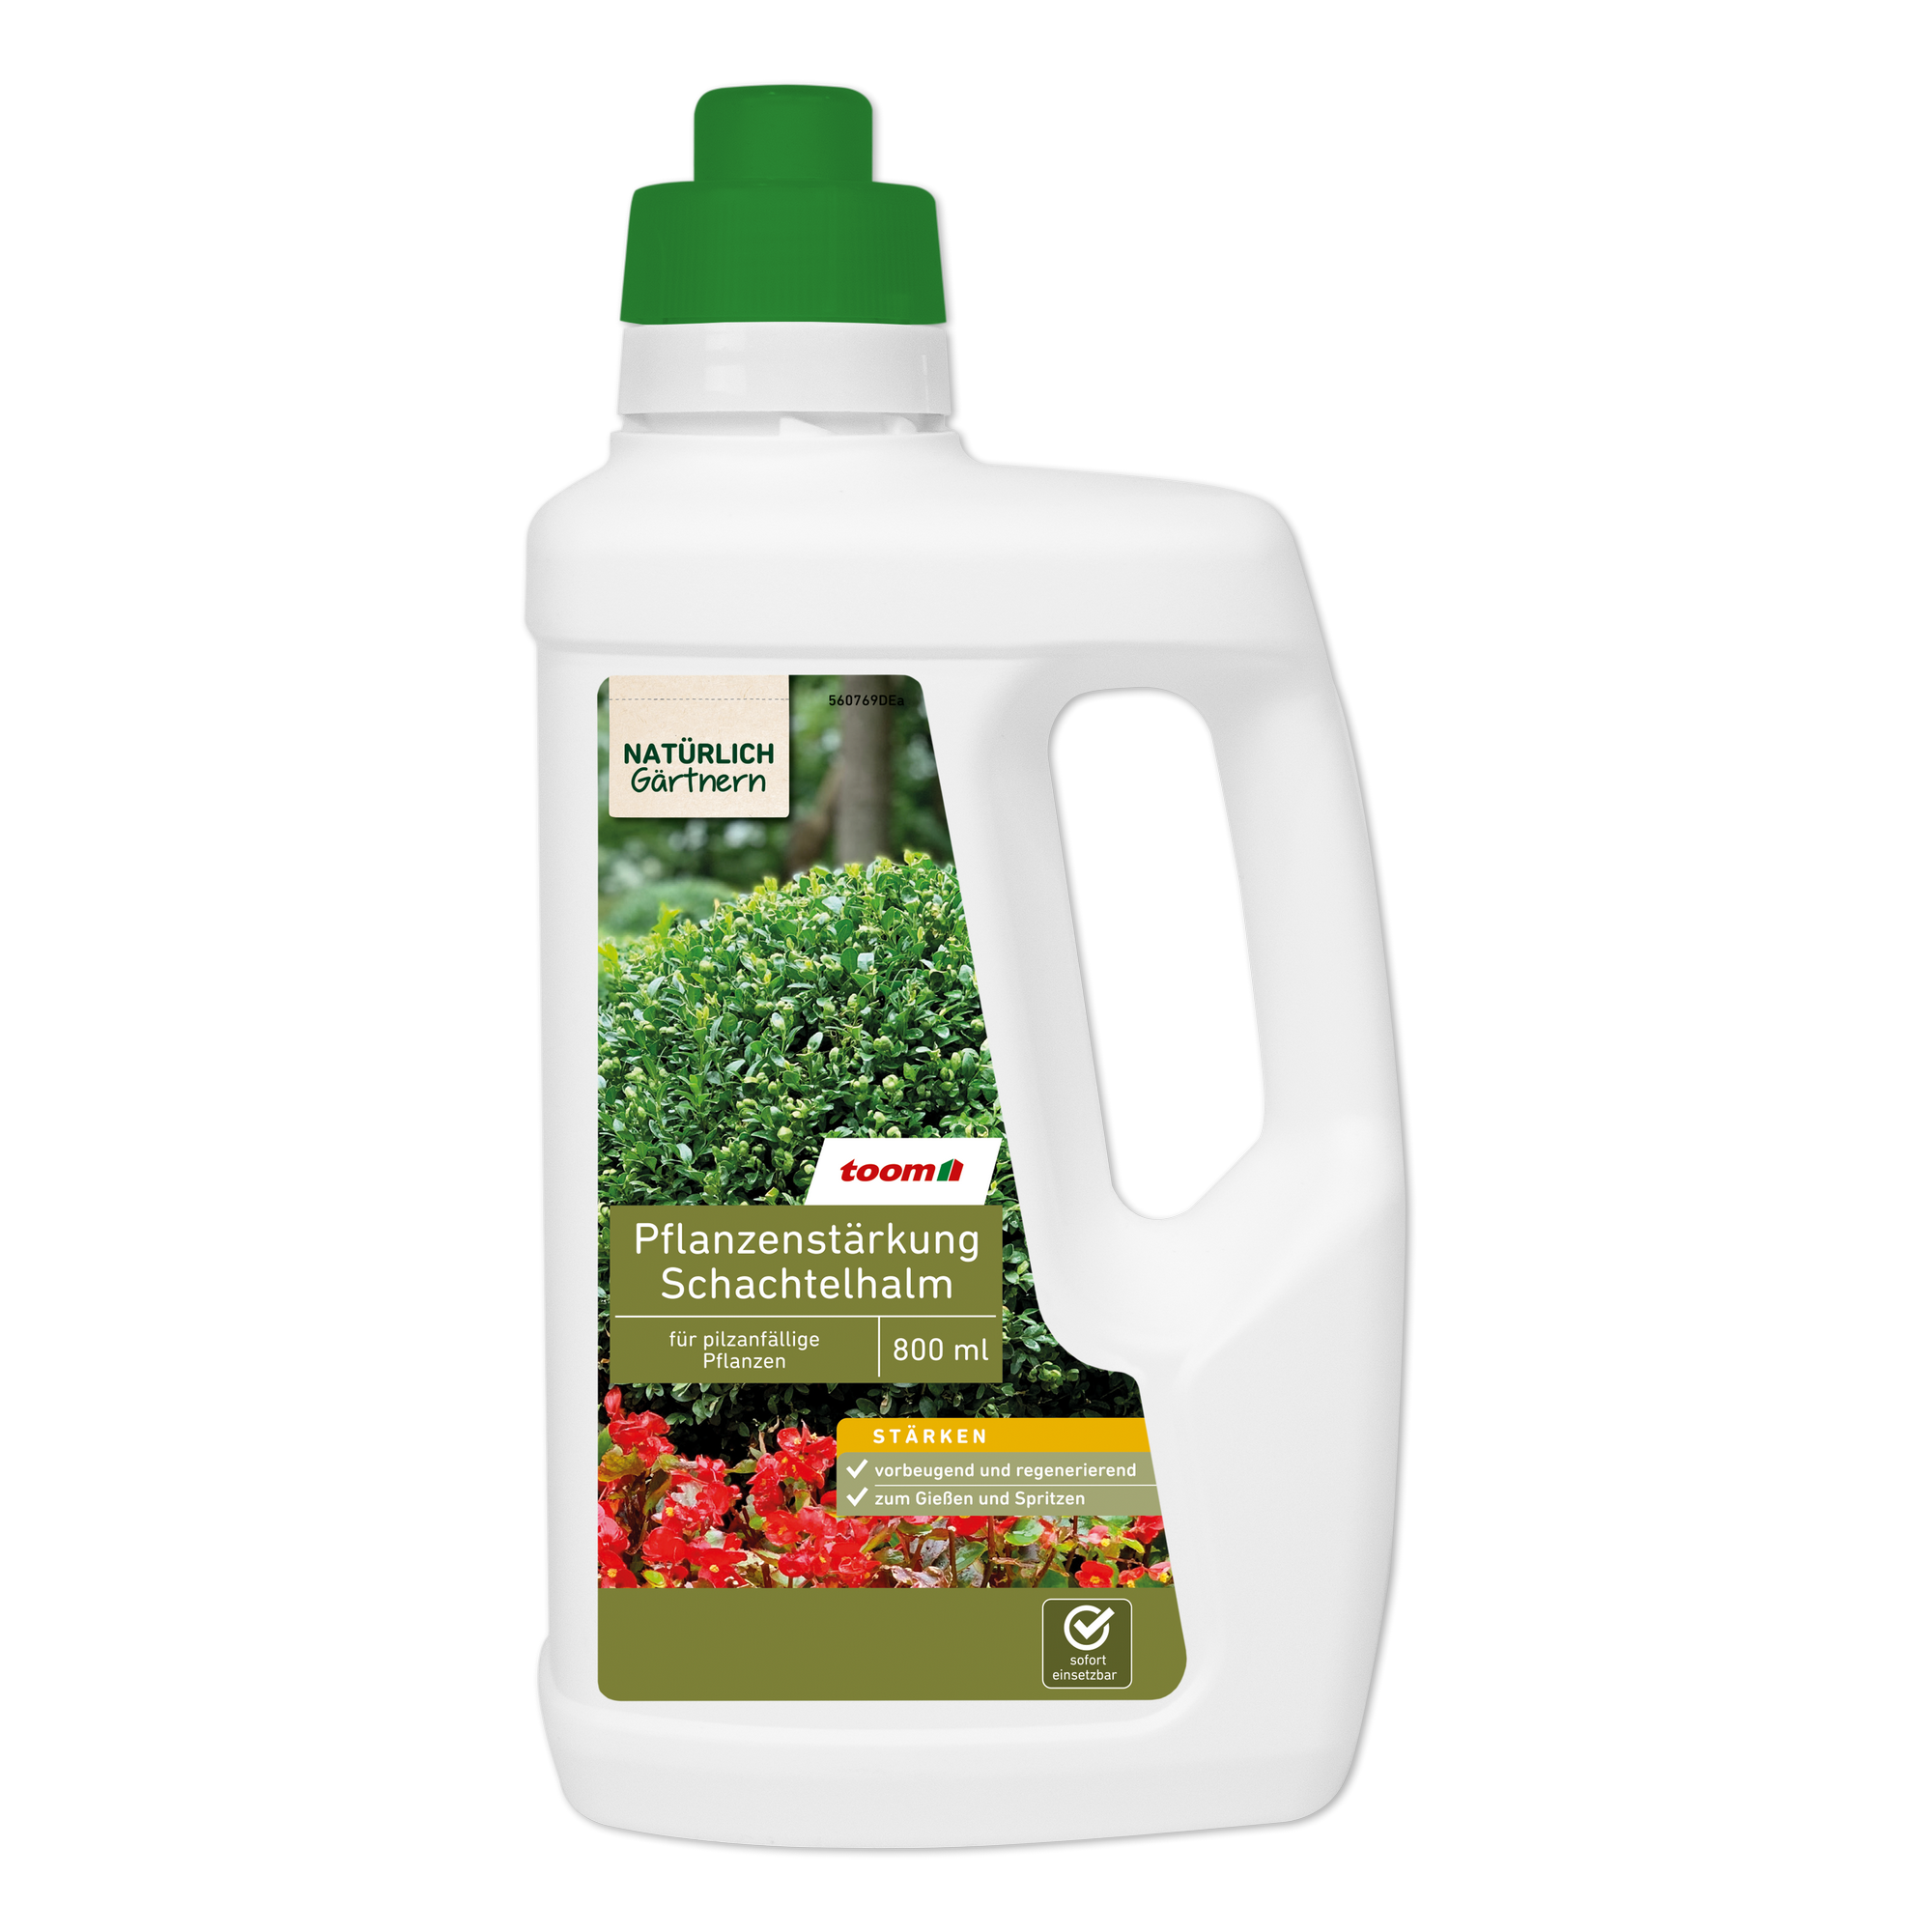 Pflanzenstärkung 'Natürlich Gärtnern' mit Schachtelhalm 800 ml + product picture